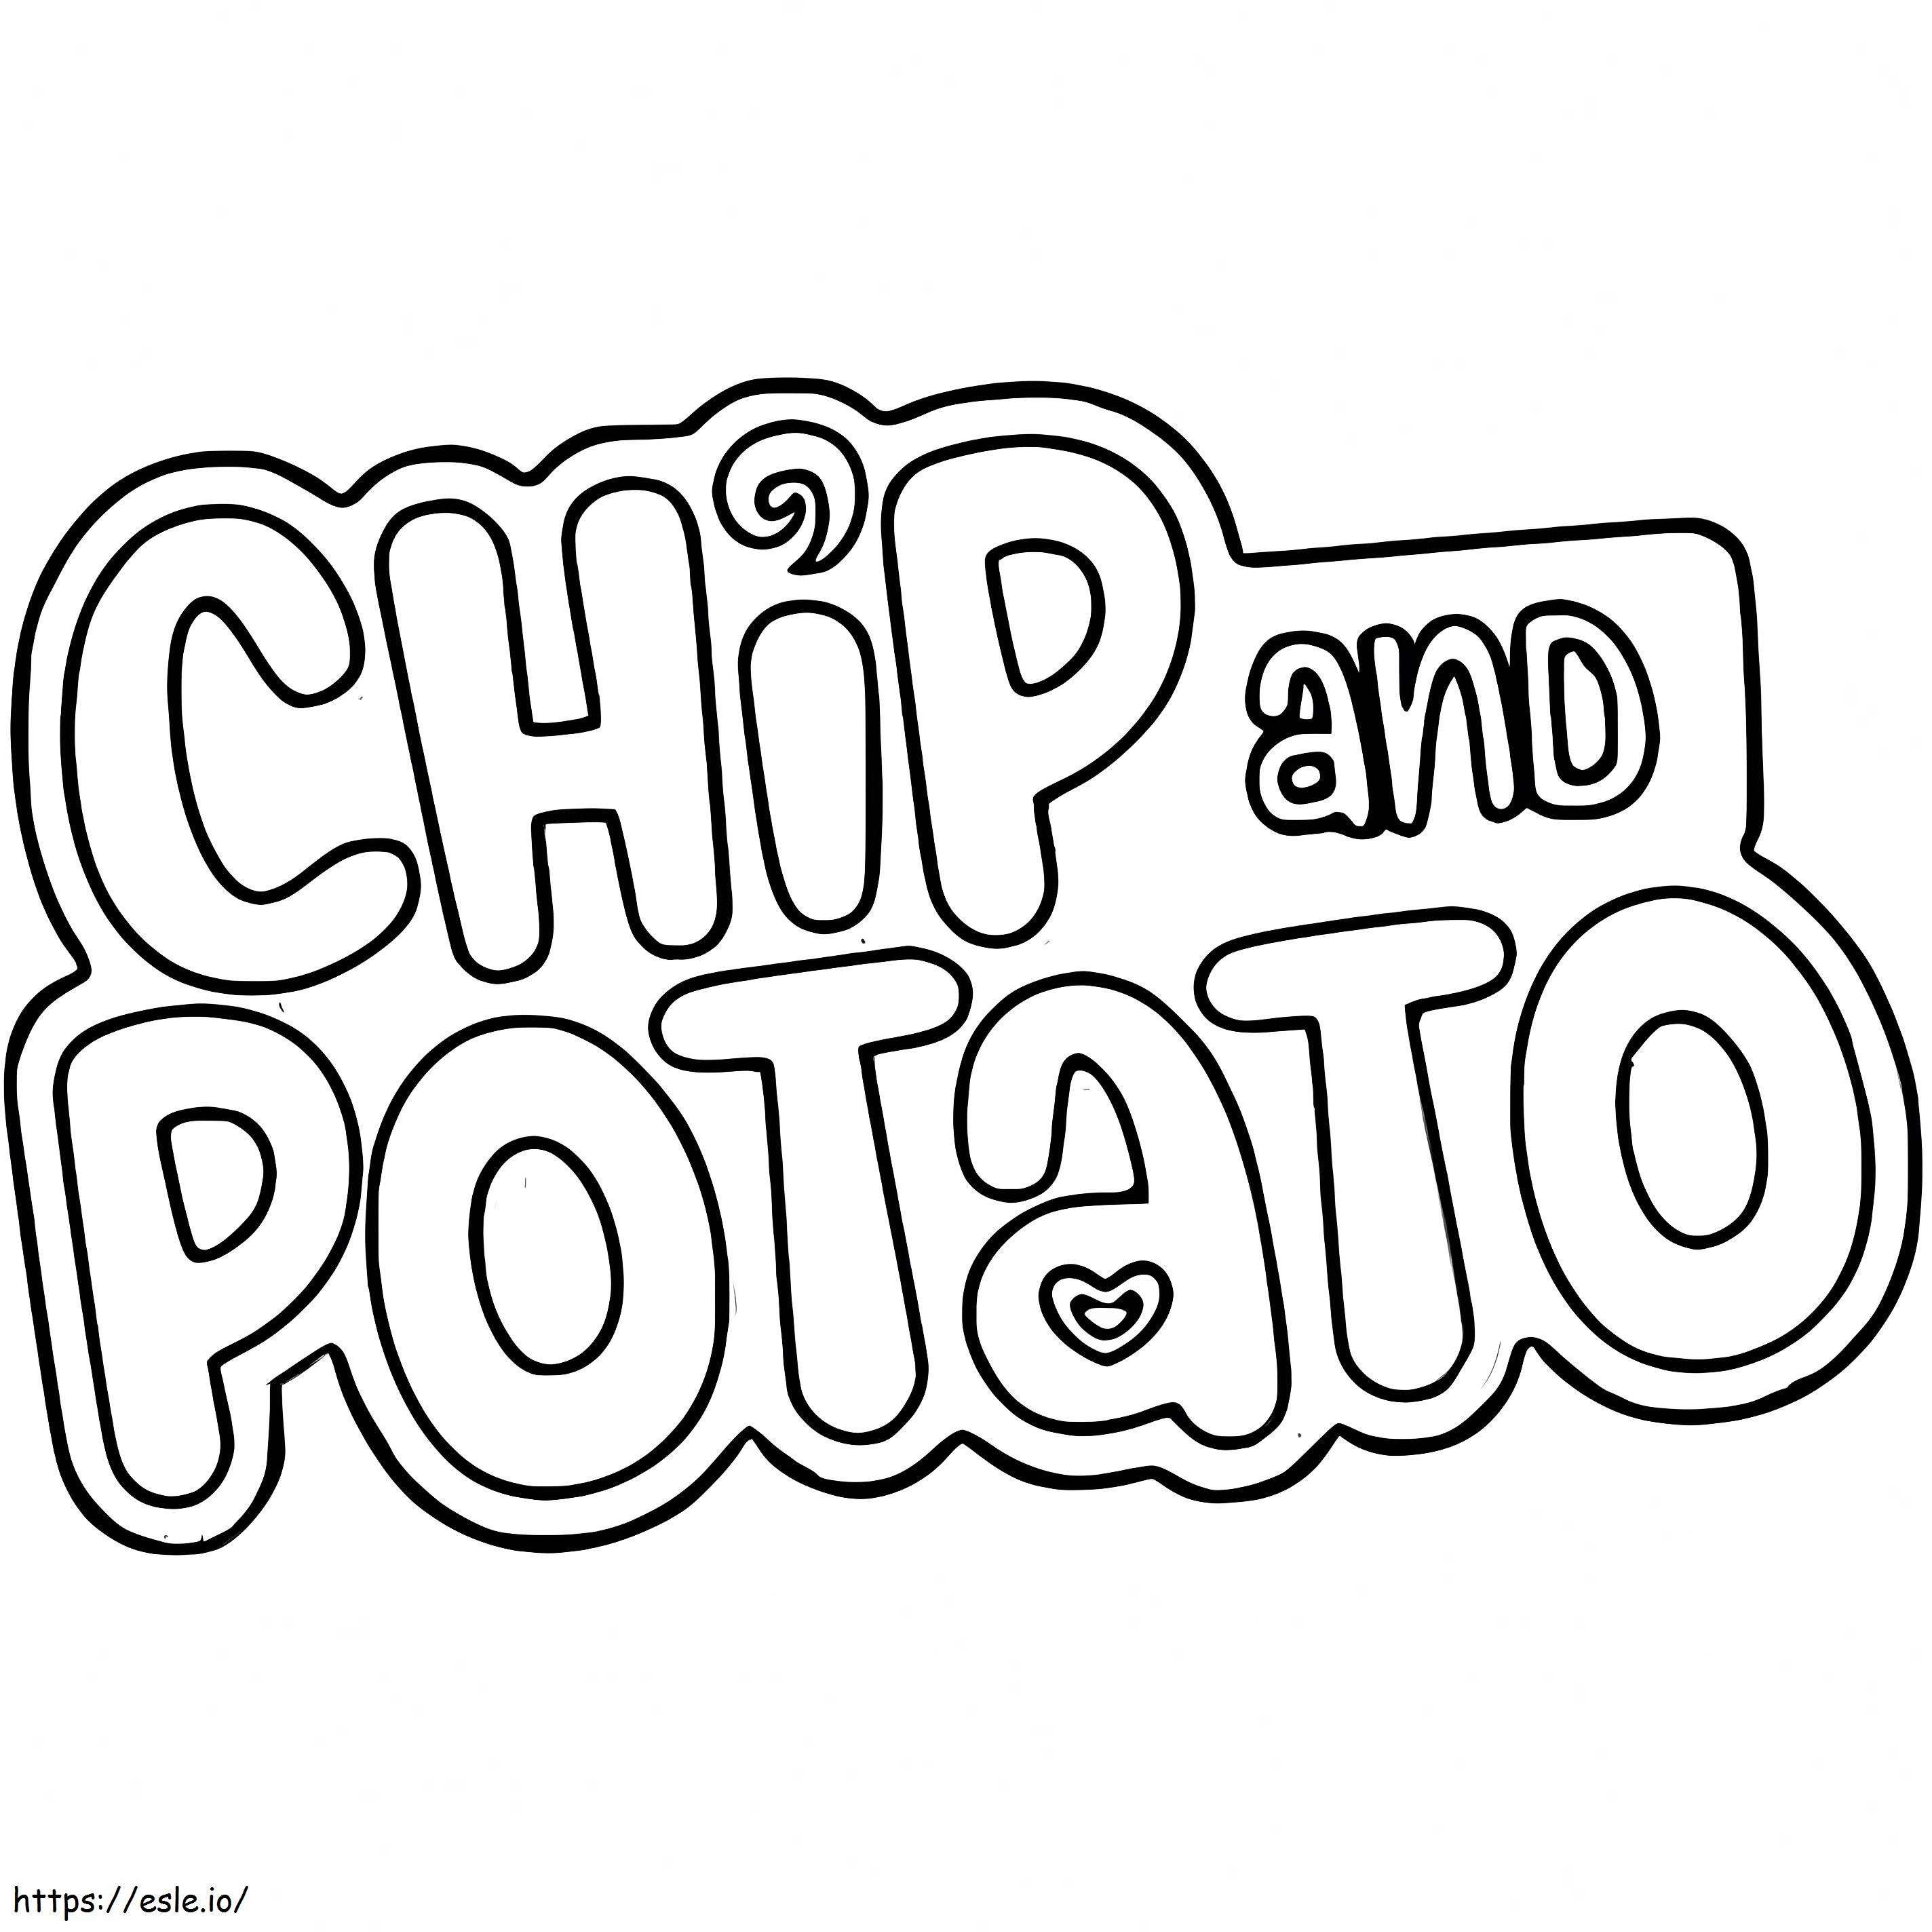 Logo Chip E Patate da colorare